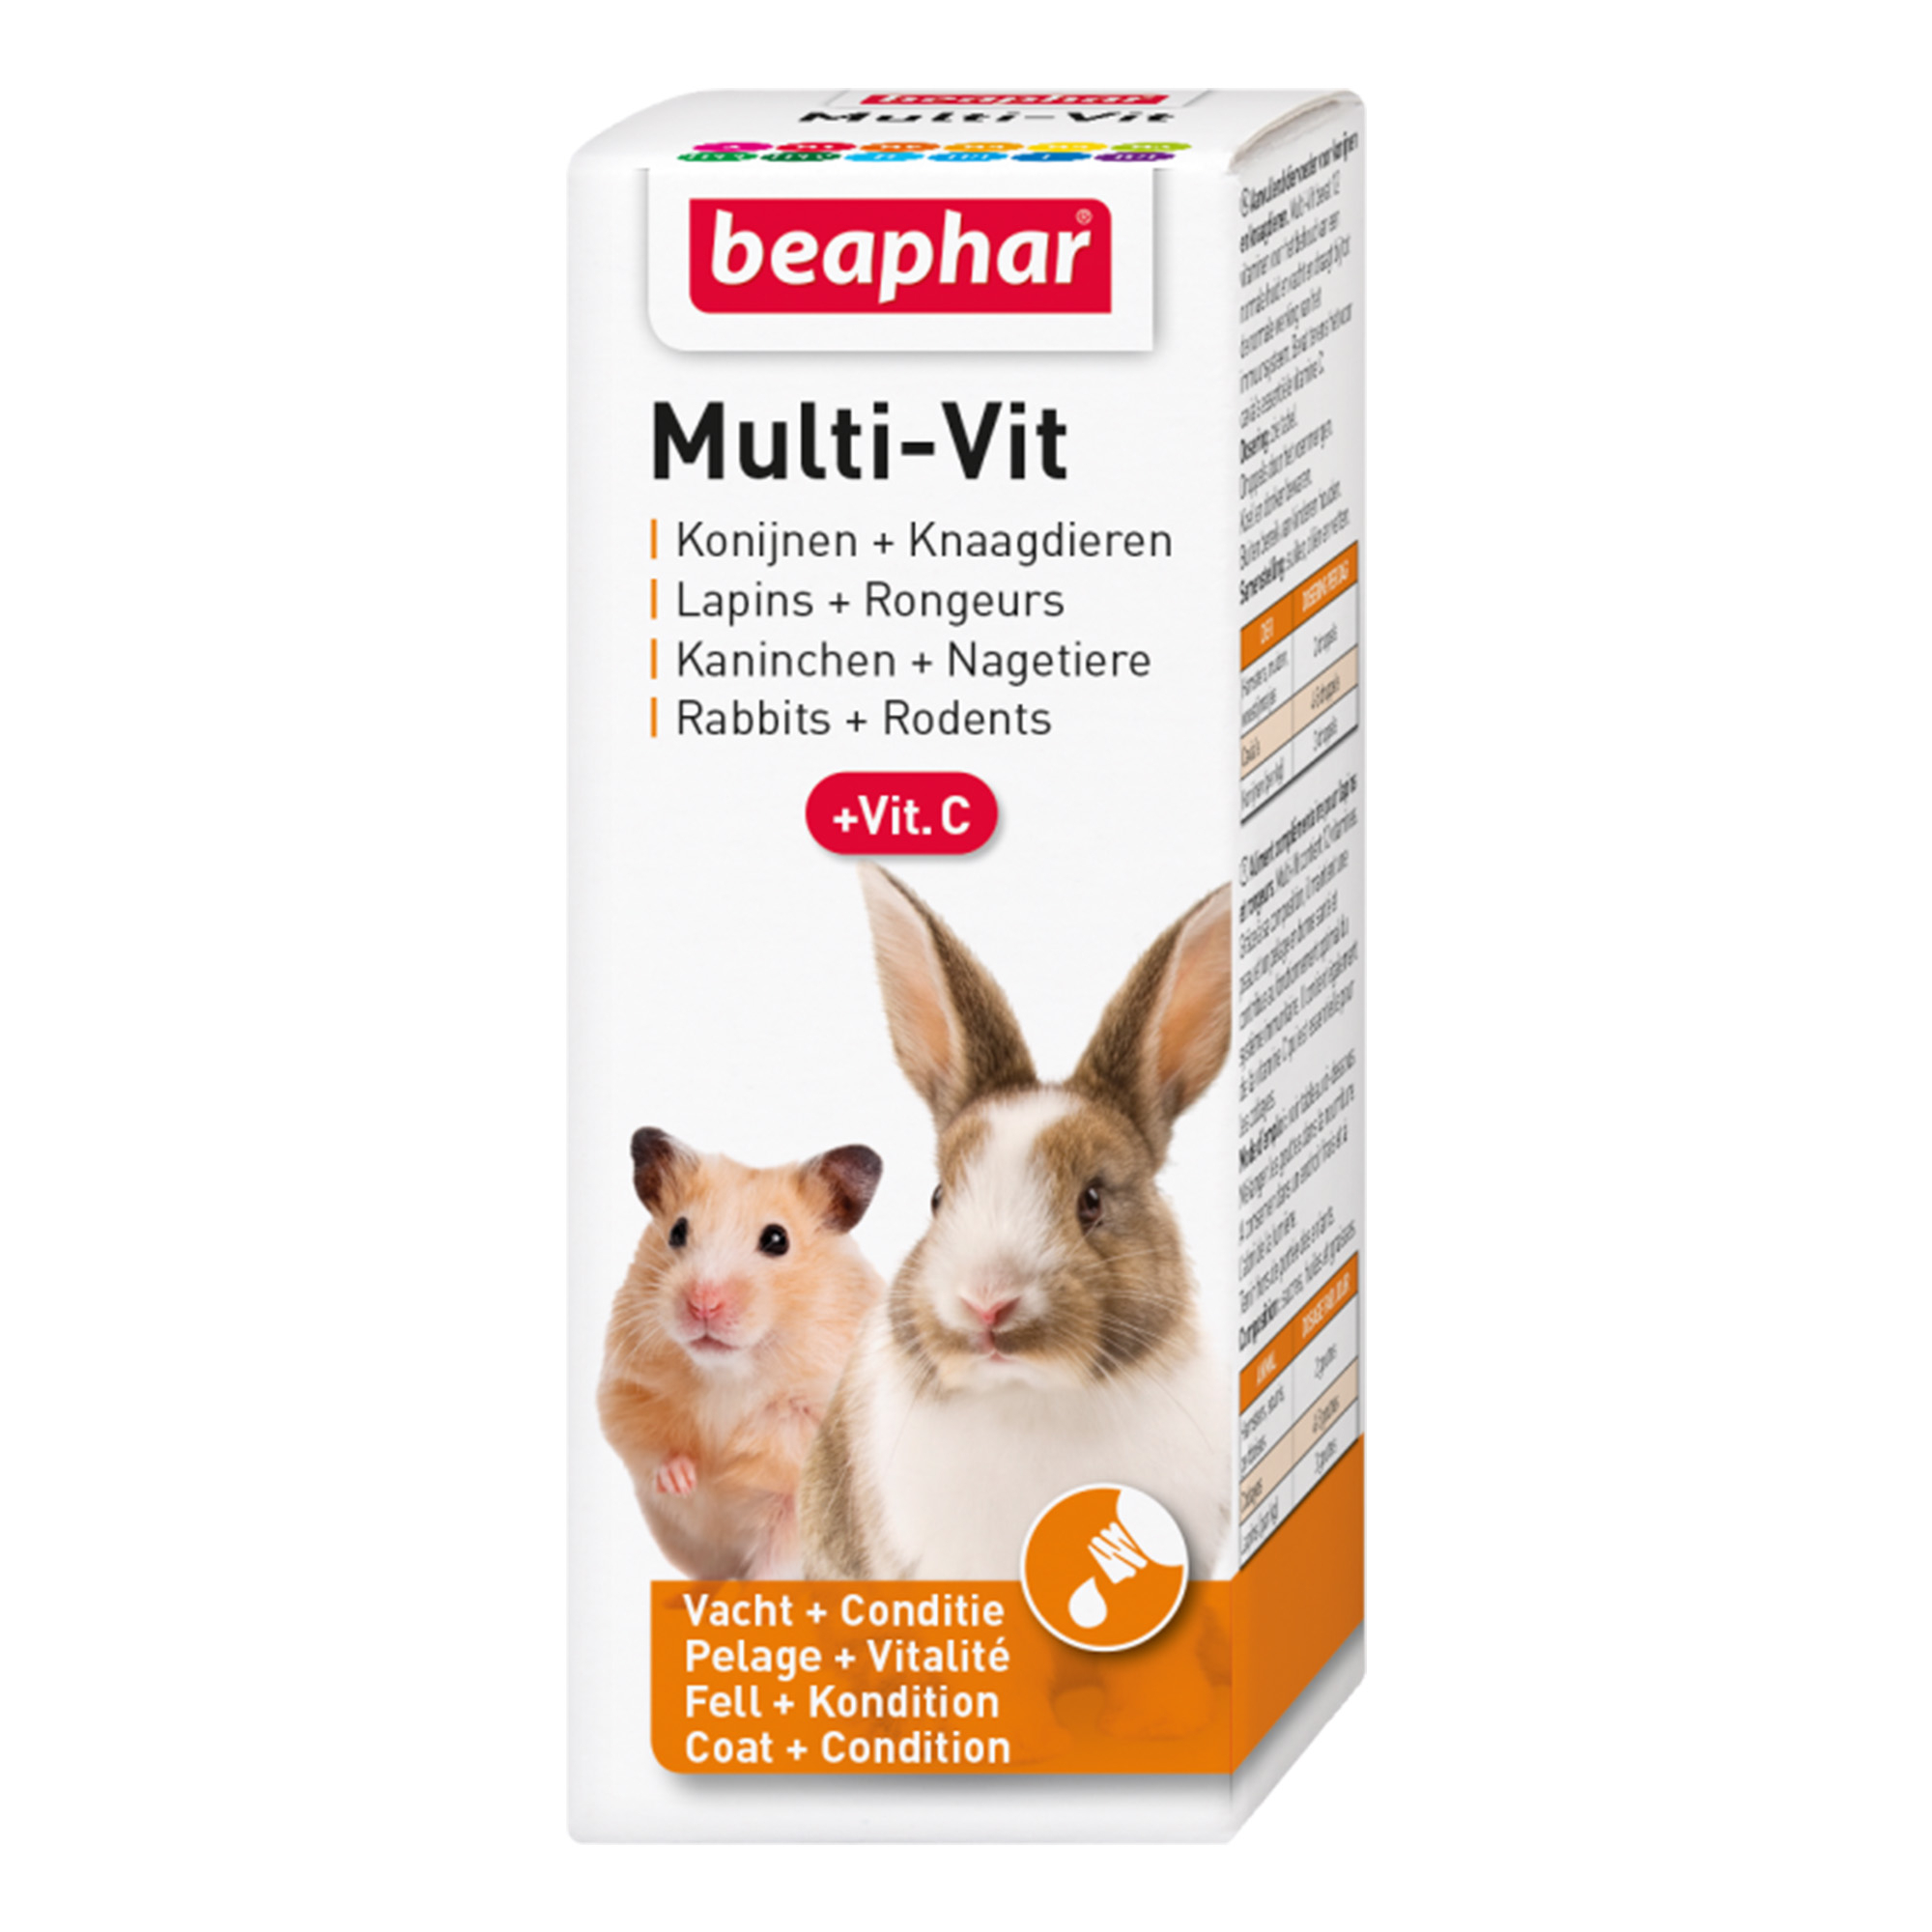 Beaphar Multi-Vit voor konijnen en knaagdieren